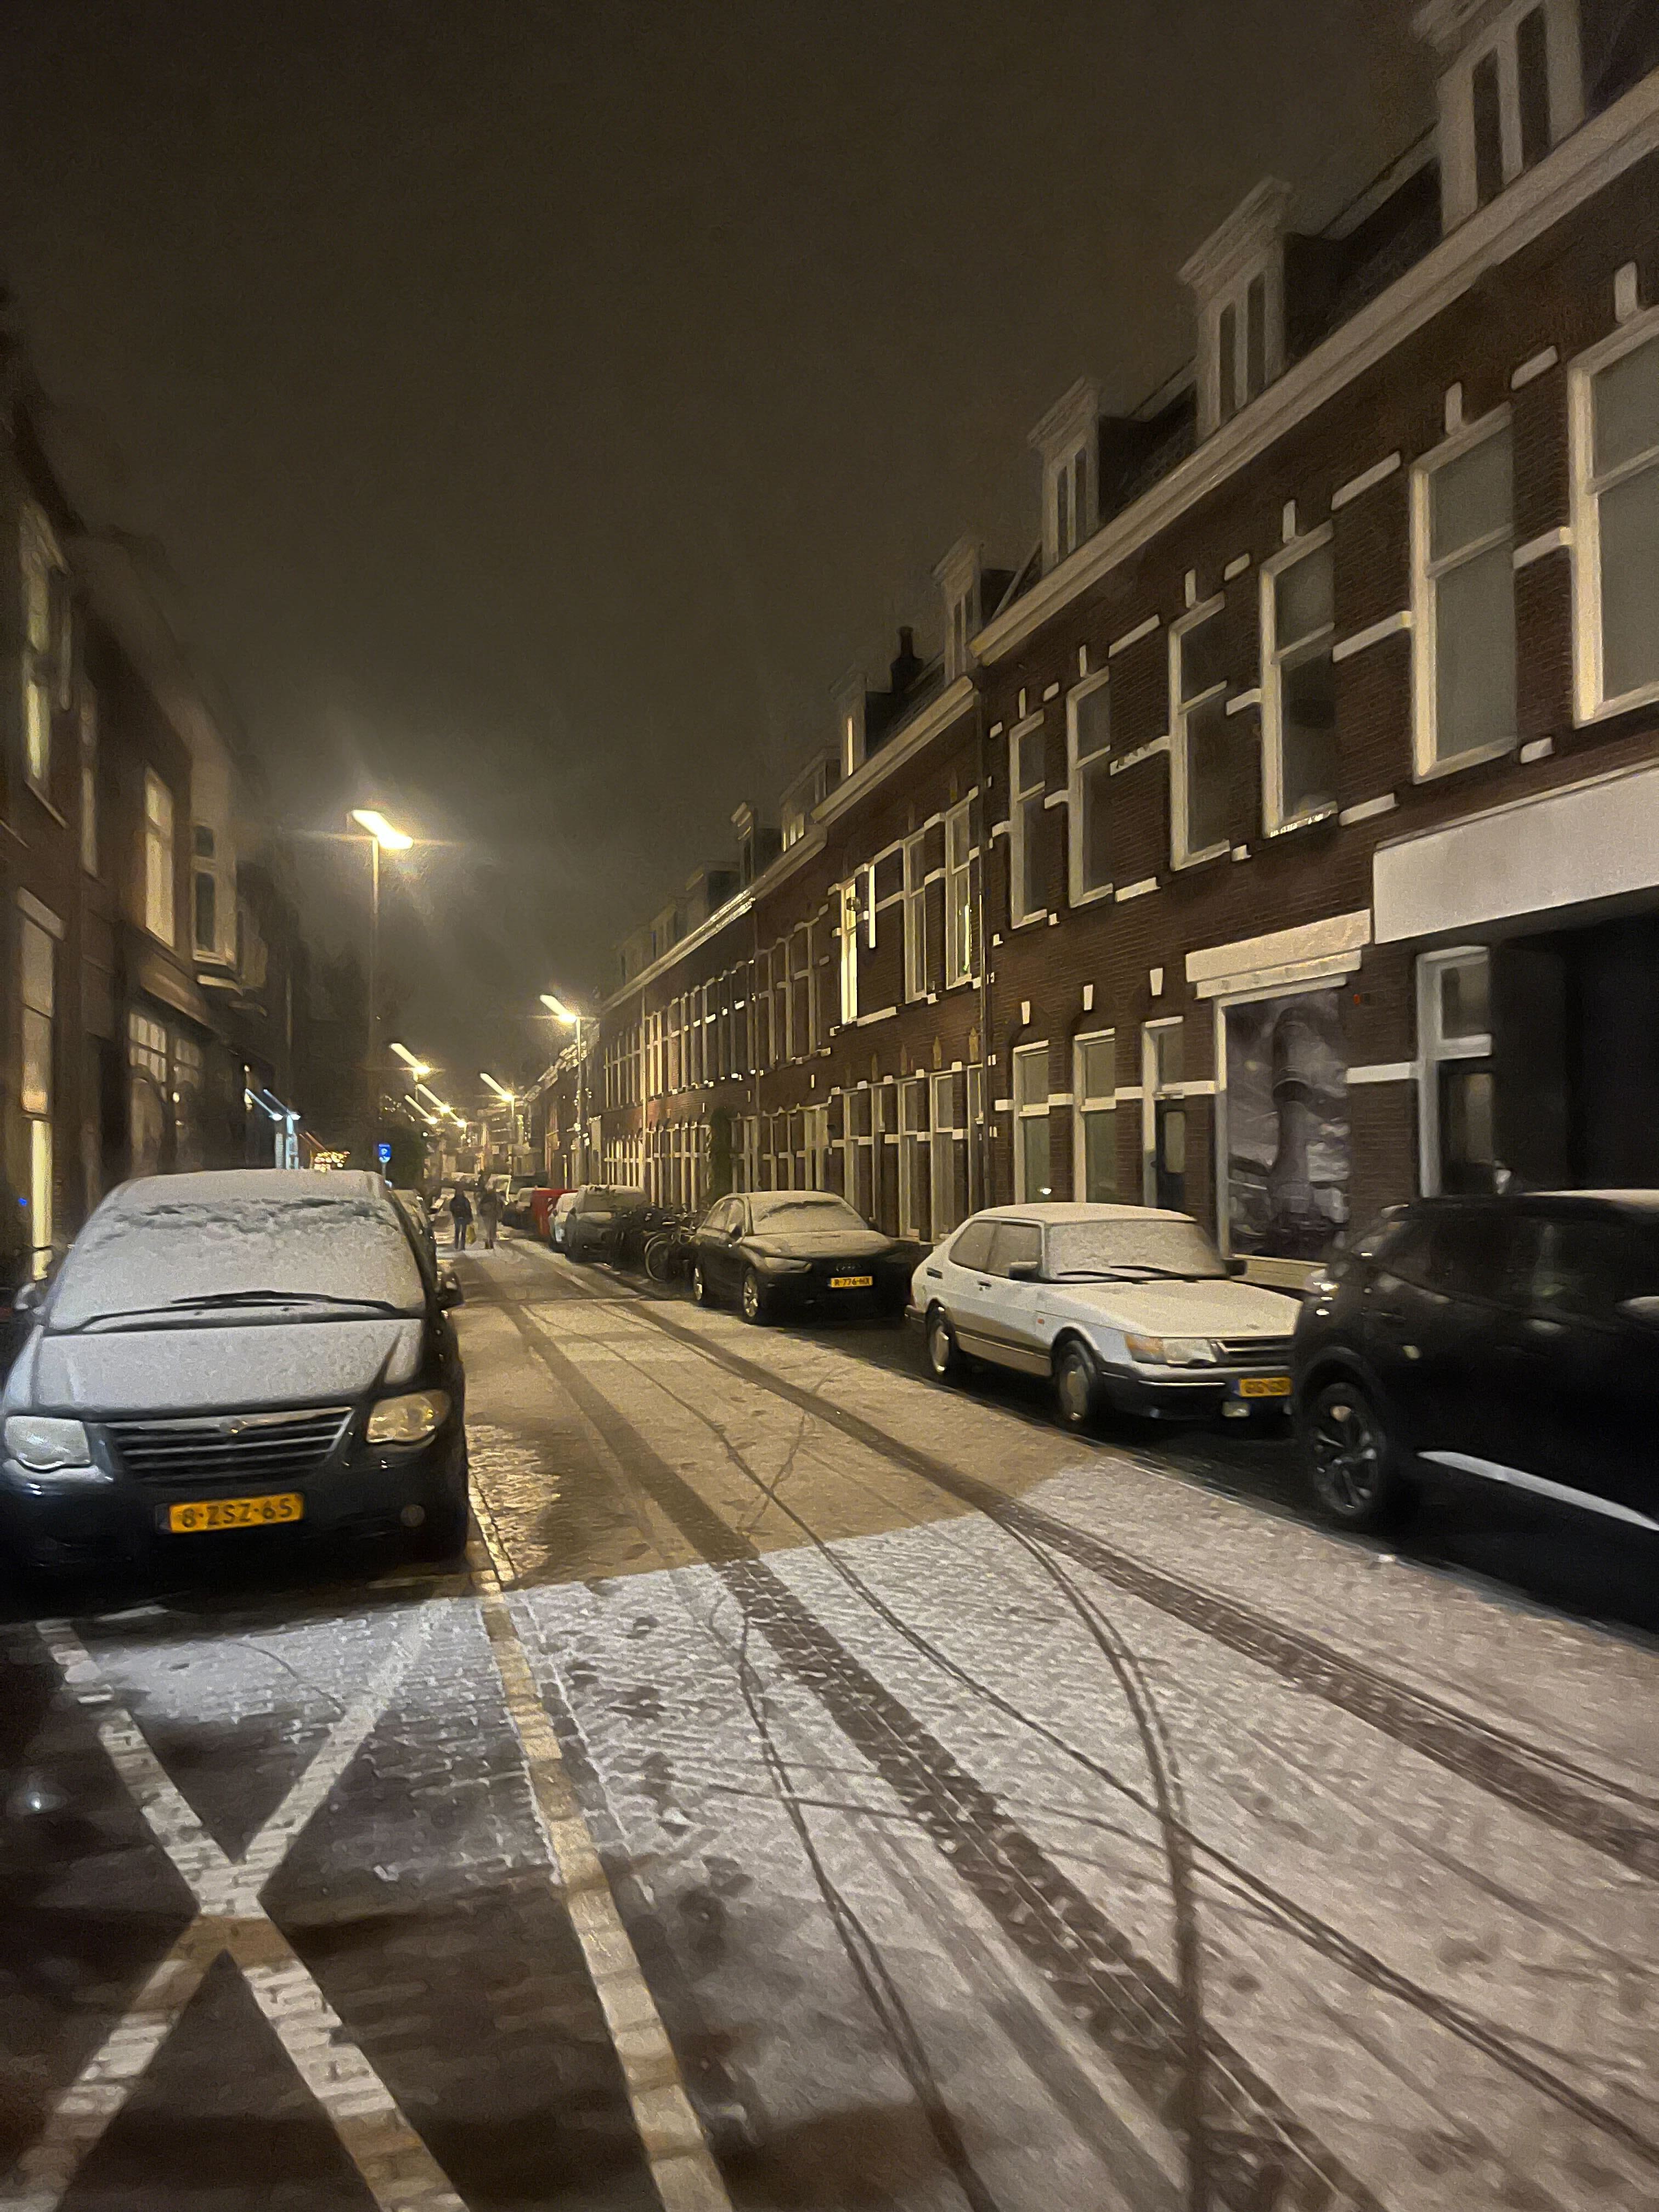 Tot dusver blijft de sneeuw in Utrecht stad op de wegen amper liggen. Foto: Berend van Straaten.